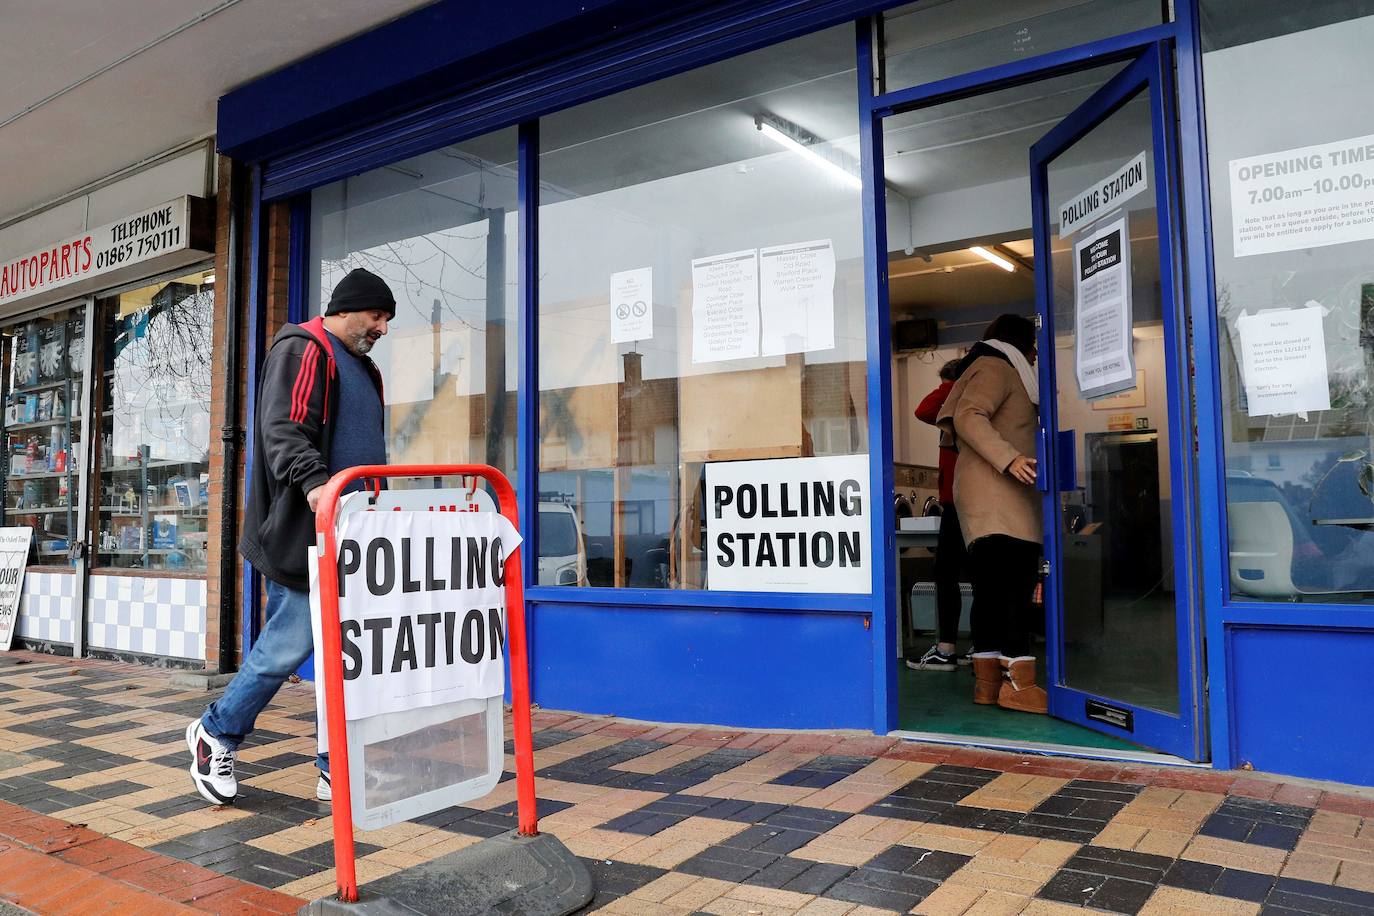 Fotos: La jornada electoral del Reino Unido, en imágenes